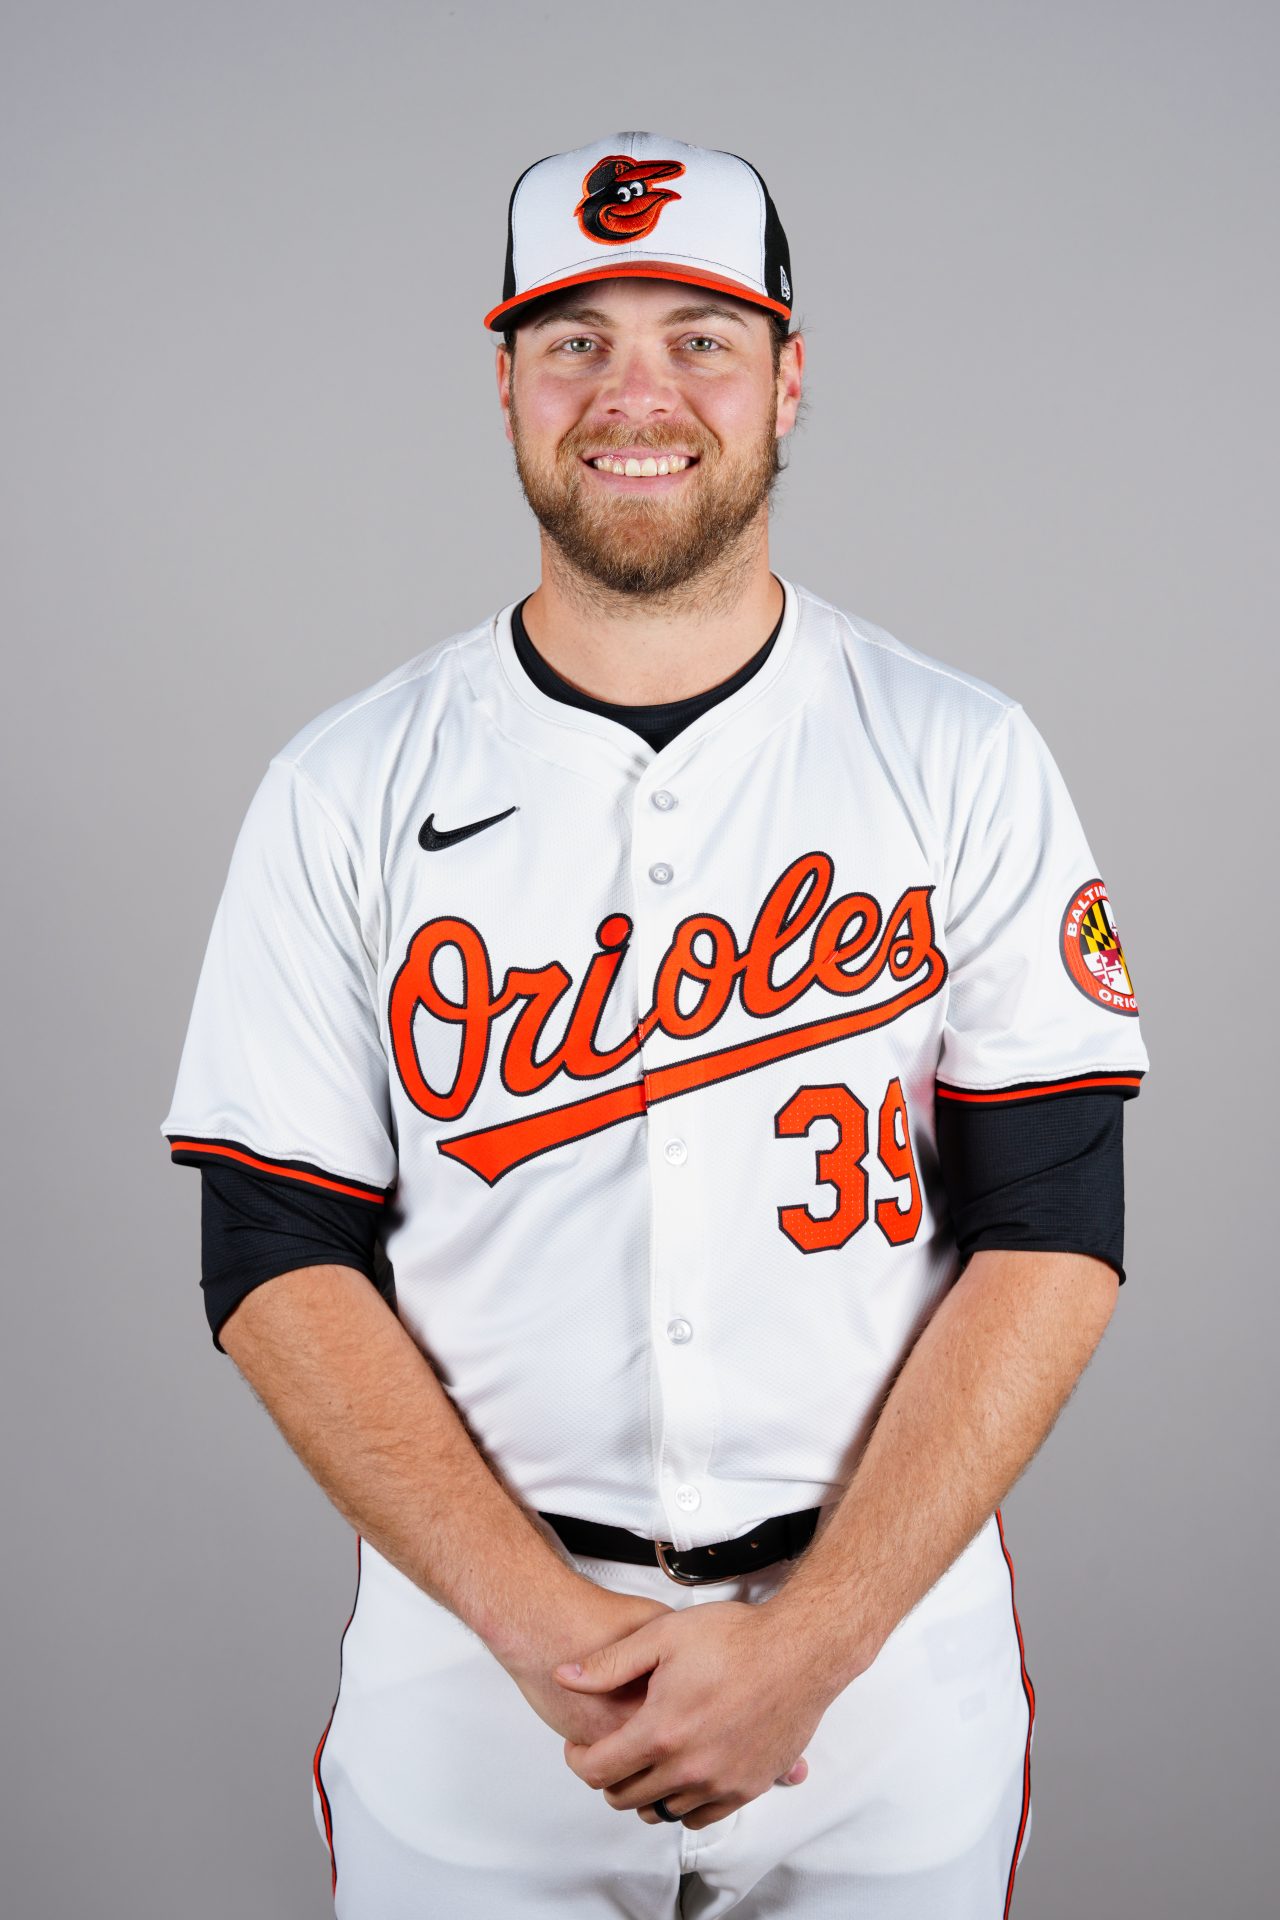 6. Corbin Burnes, Baltimore Orioles